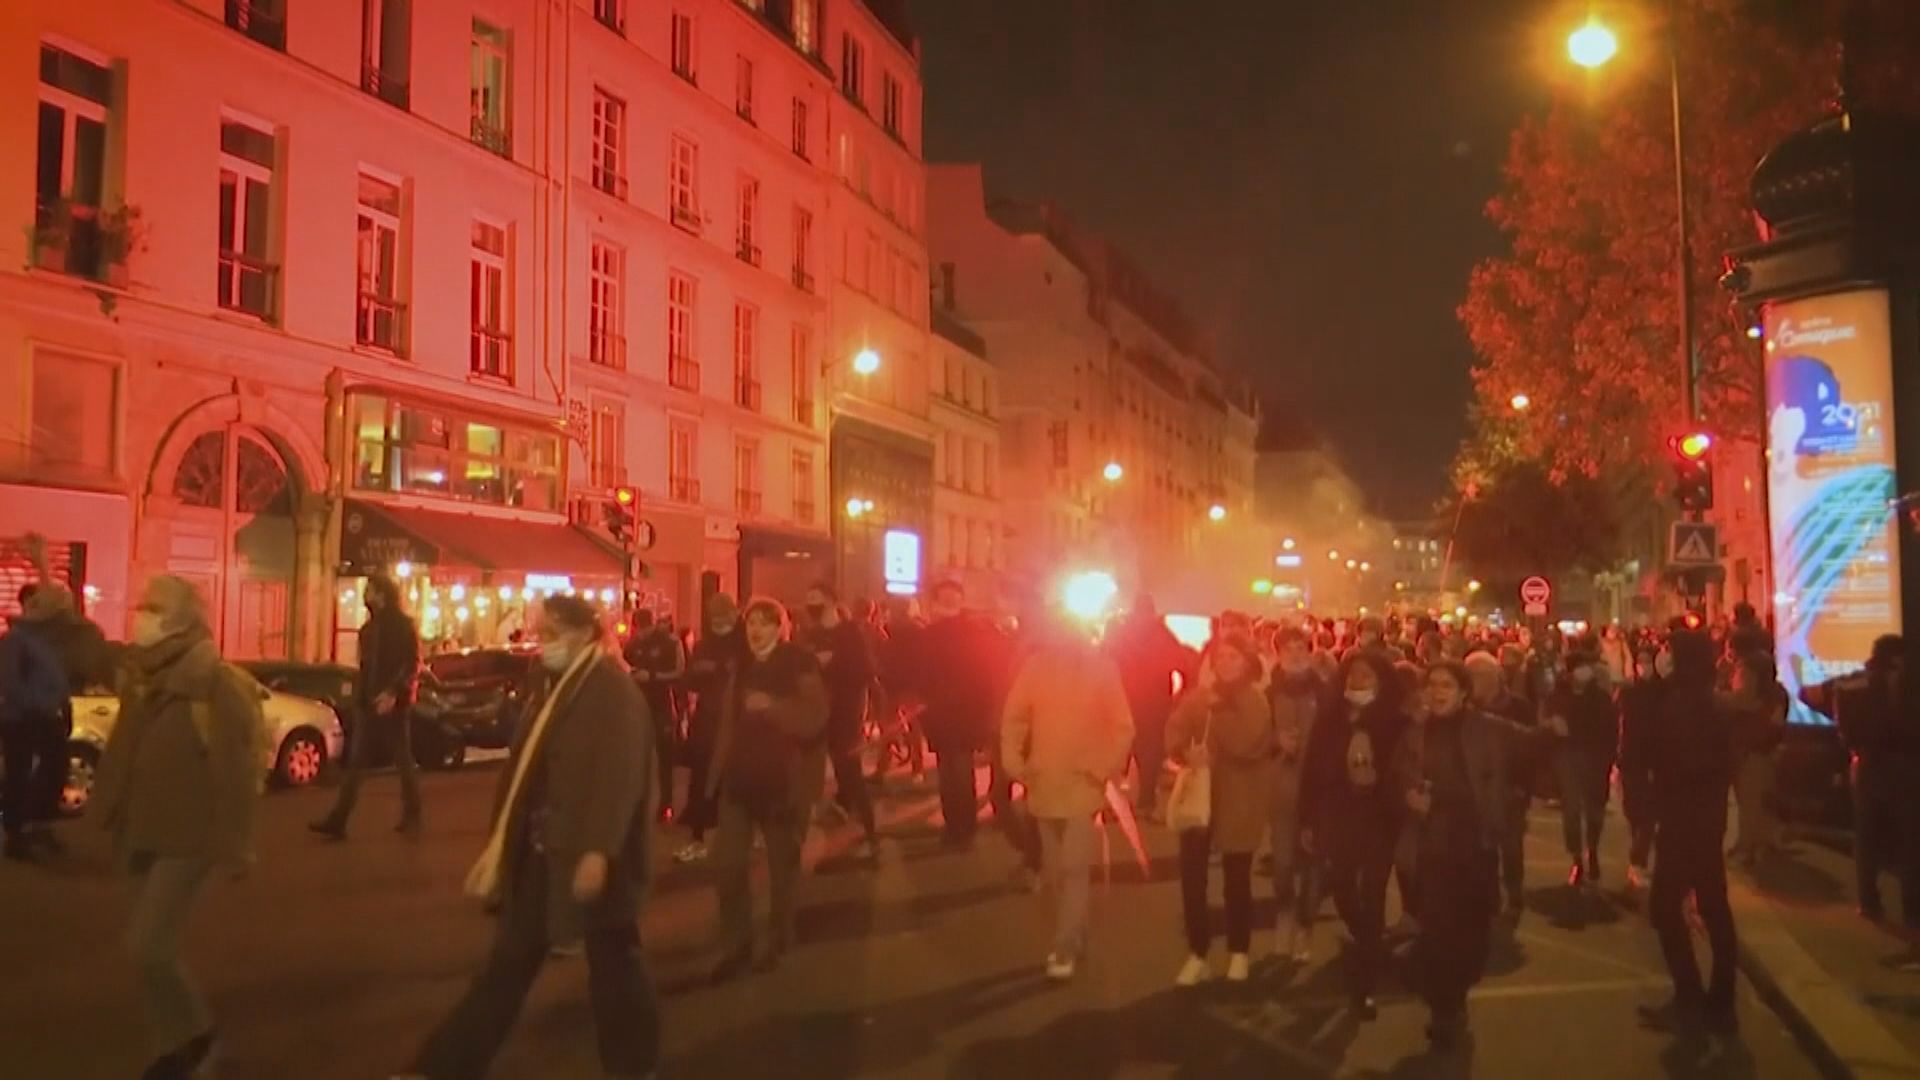 法國再實施全國封鎖前有民眾上街抗議新措施